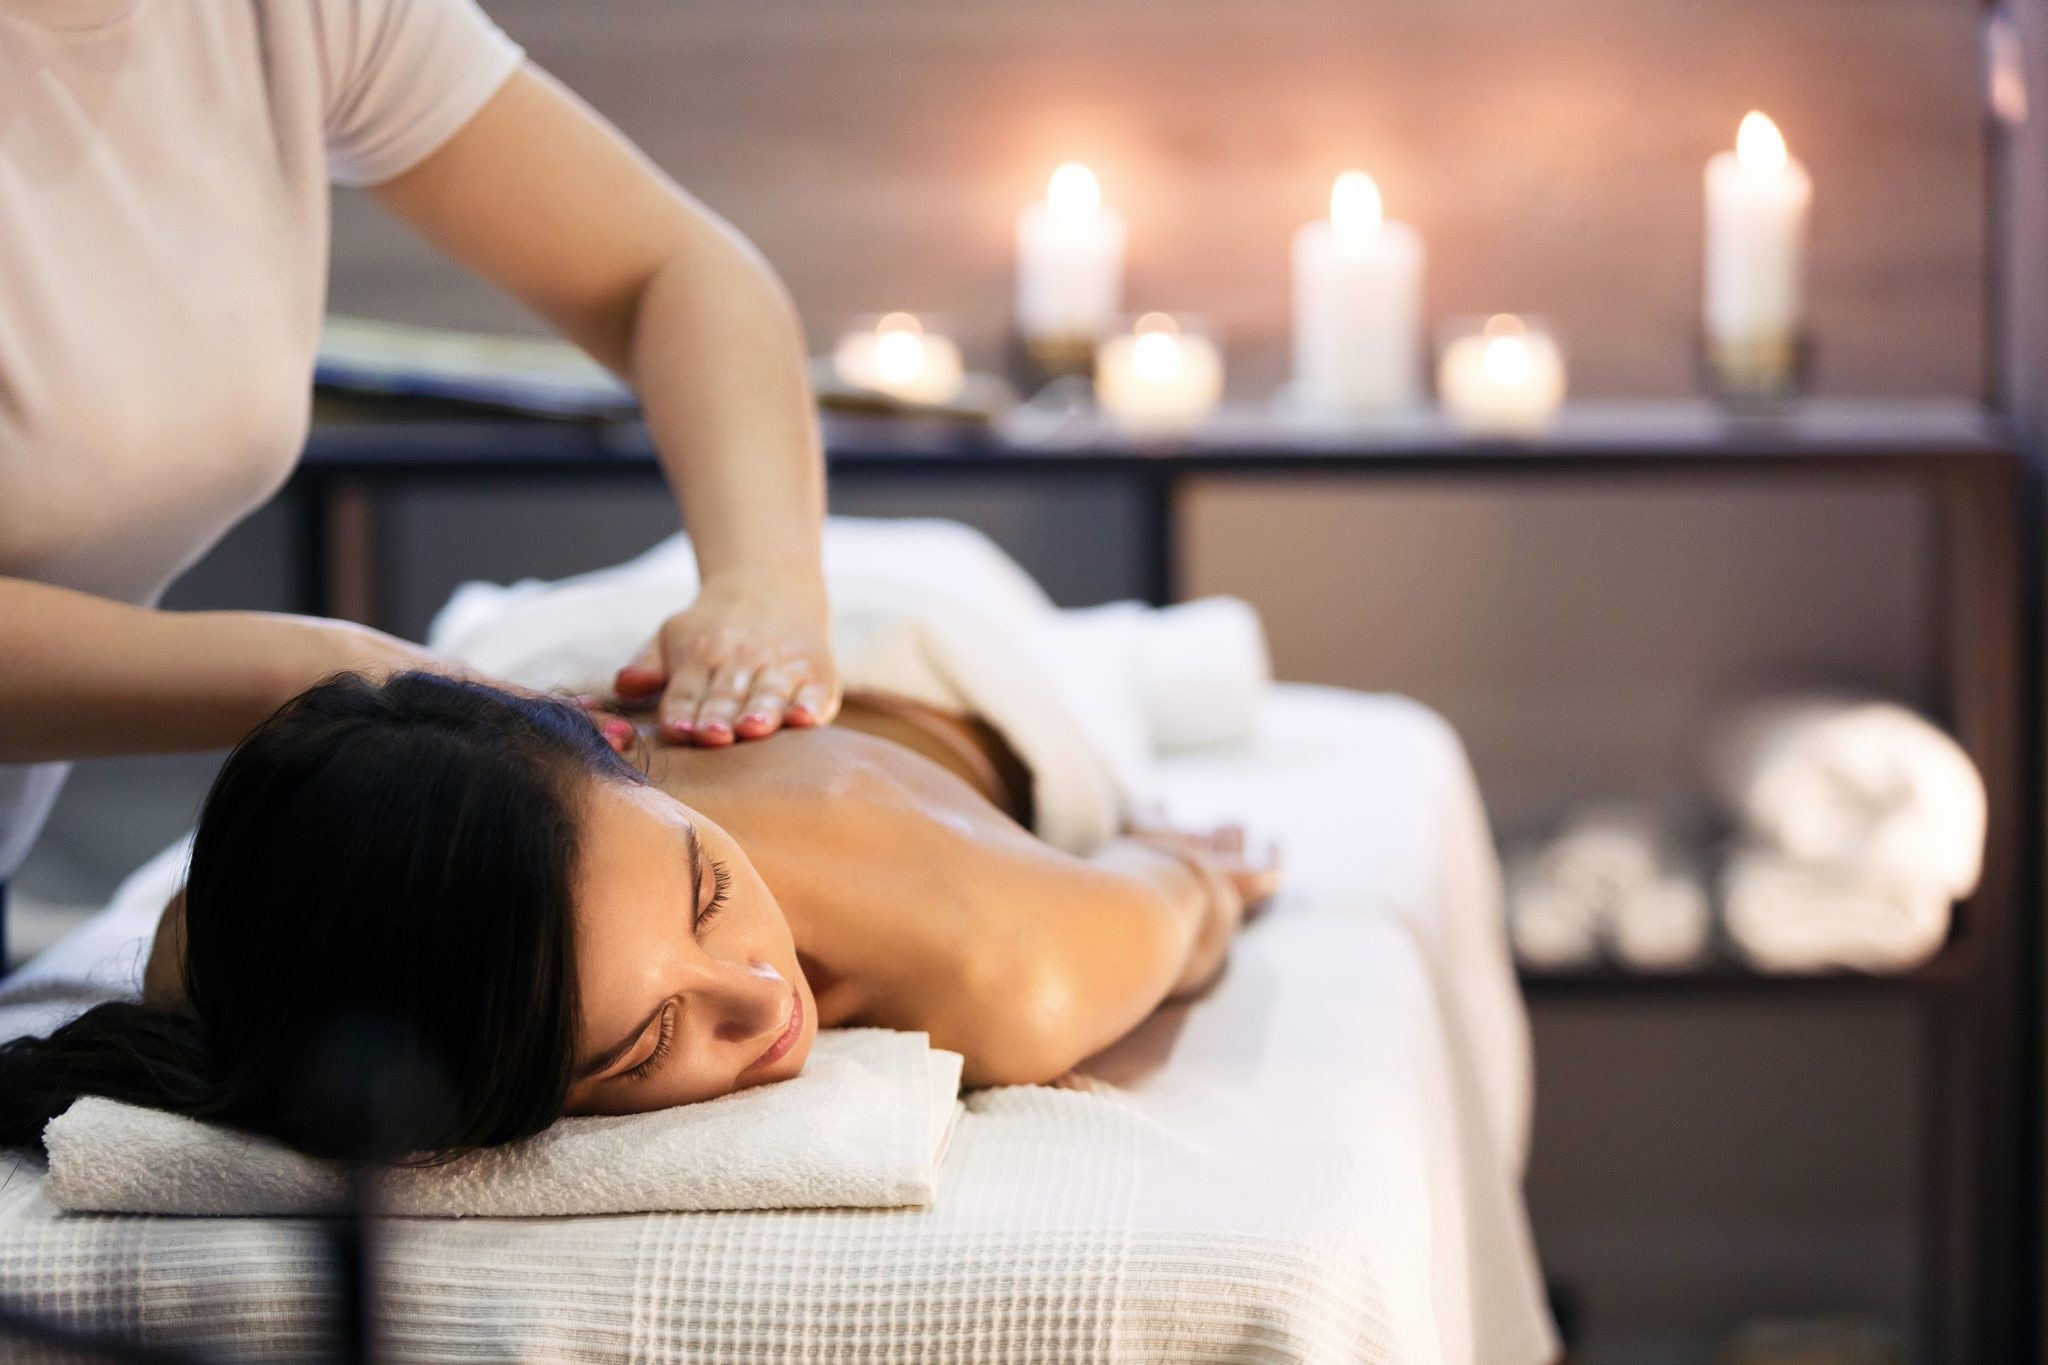 Động tác massage nhẹ nhàng có thể giảm căng thẳng trong cơ bắp